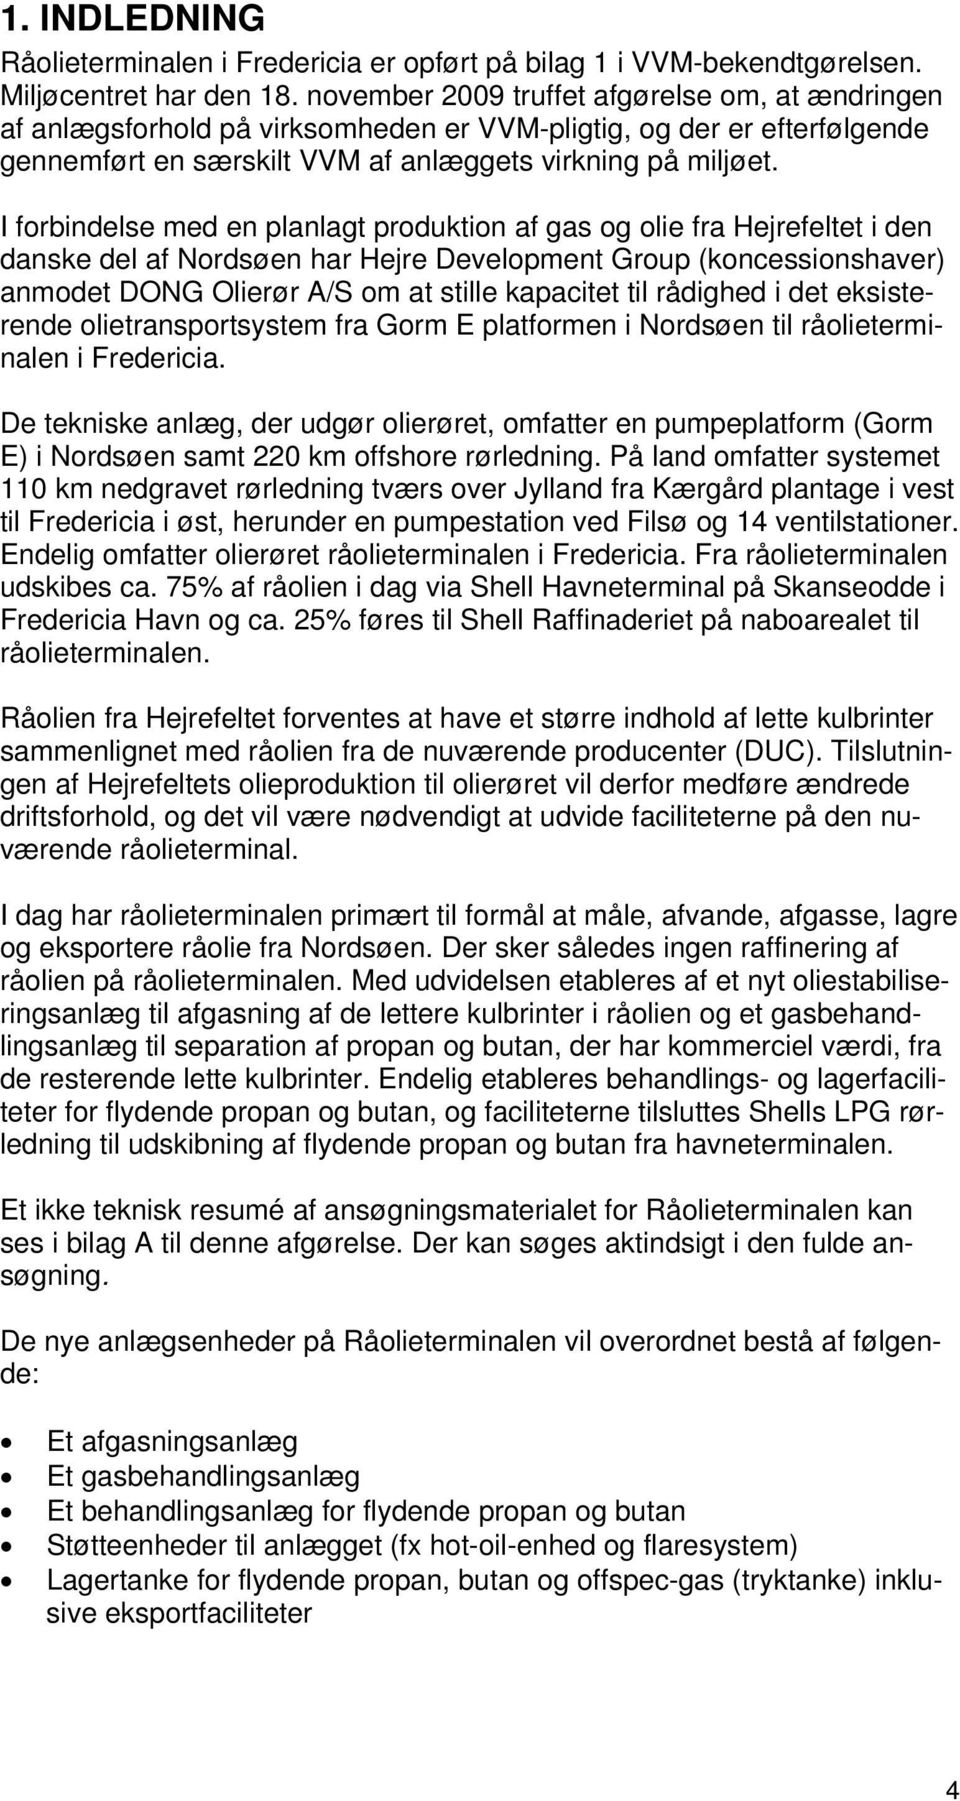 I forbindelse med en planlagt produktion af gas og olie fra Hejrefeltet i den danske del af Nordsøen har Hejre Development Group (koncessionshaver) anmodet DONG Olierør A/S om at stille kapacitet til